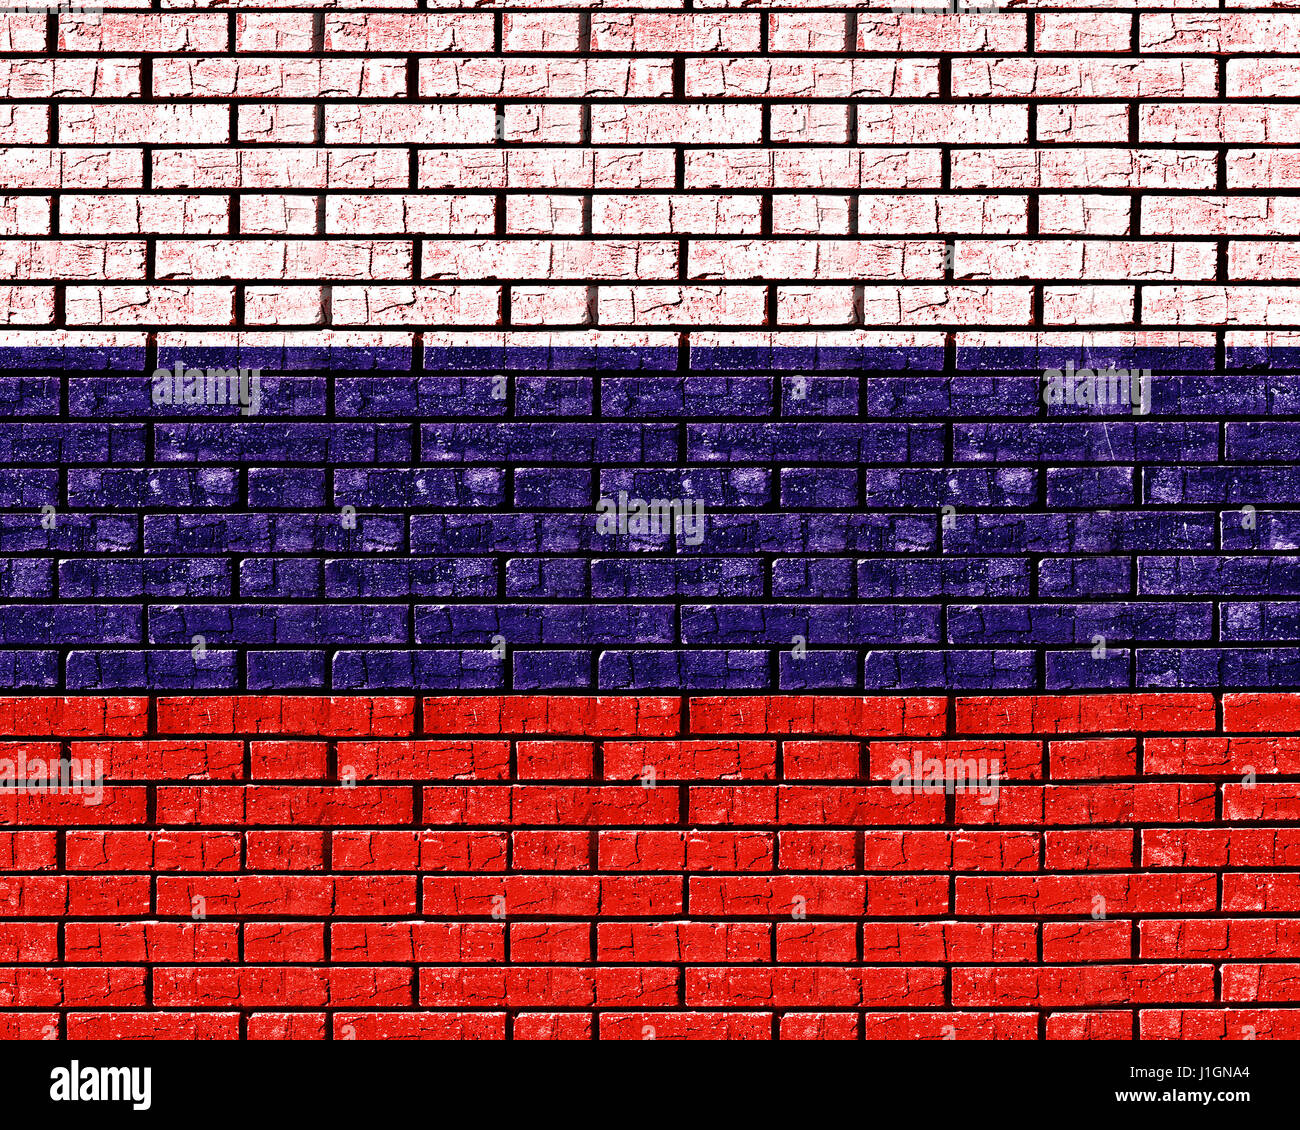 Abbildung der Flagge von Russland zu suchen, als ob es auf eine Wand wie Graffiti gemalt worden ist. Stockfoto